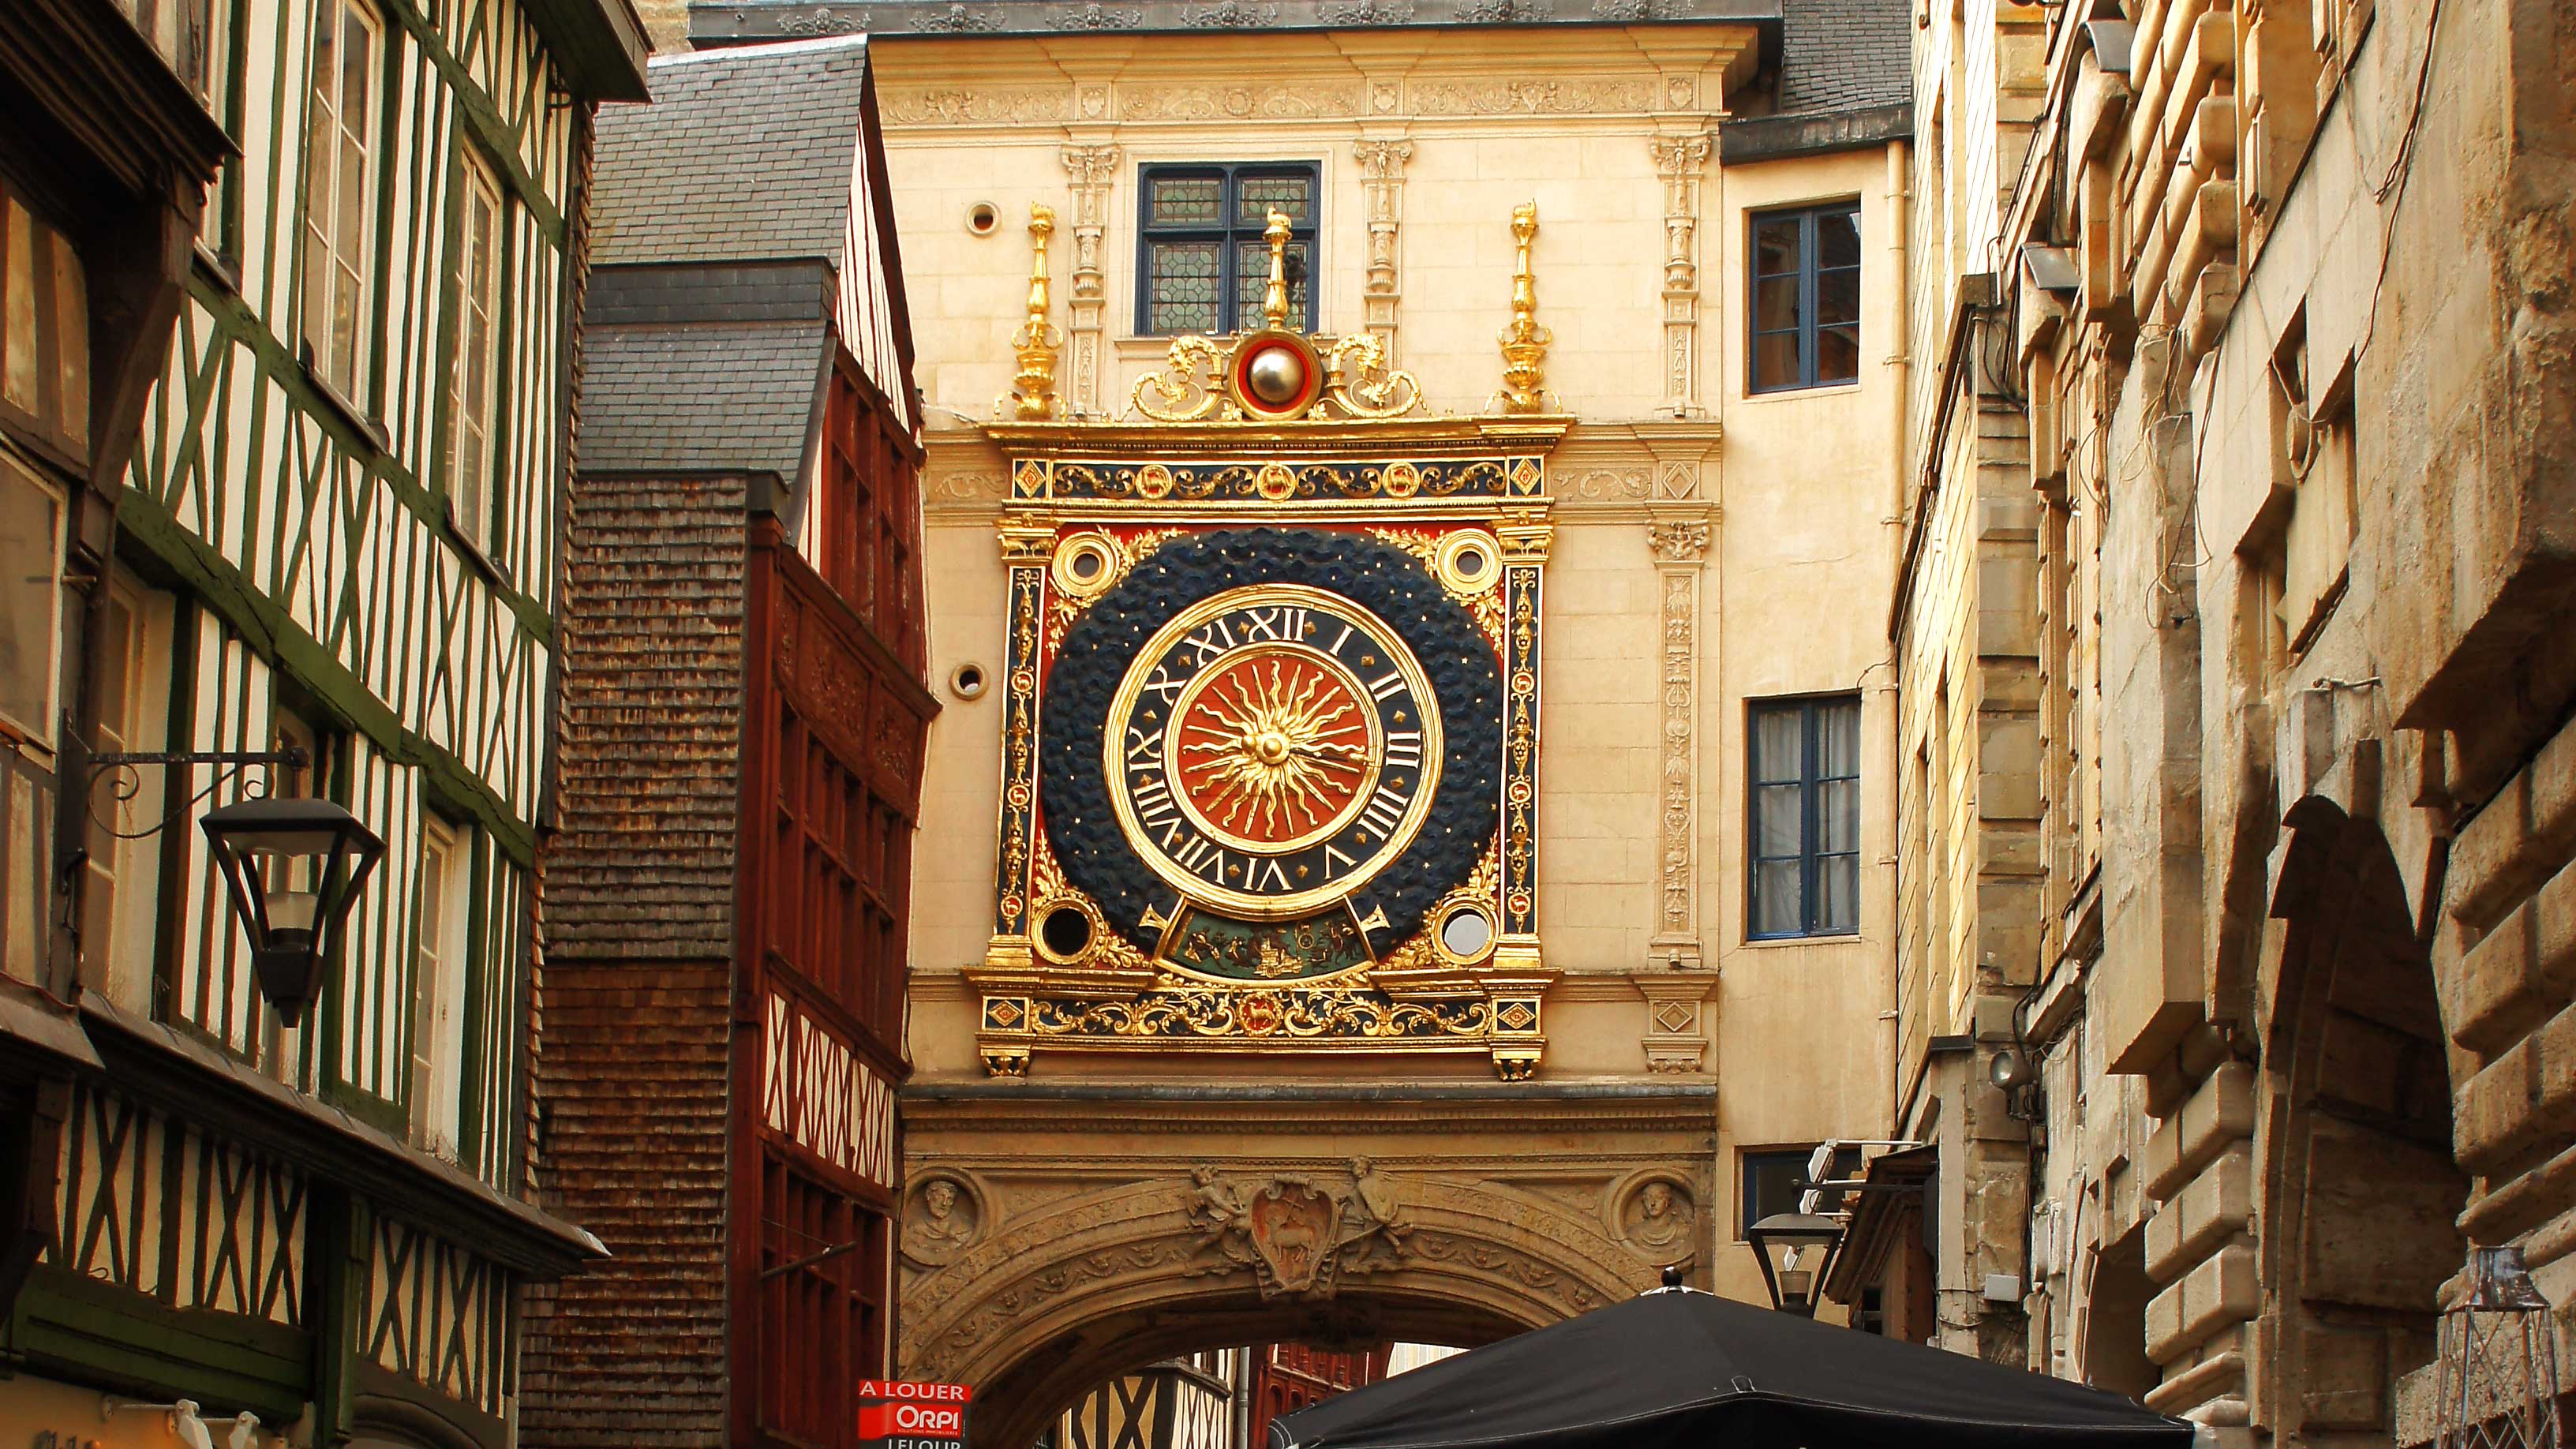 Le Gros-Horloge, große astronomische Uhr, Rouen